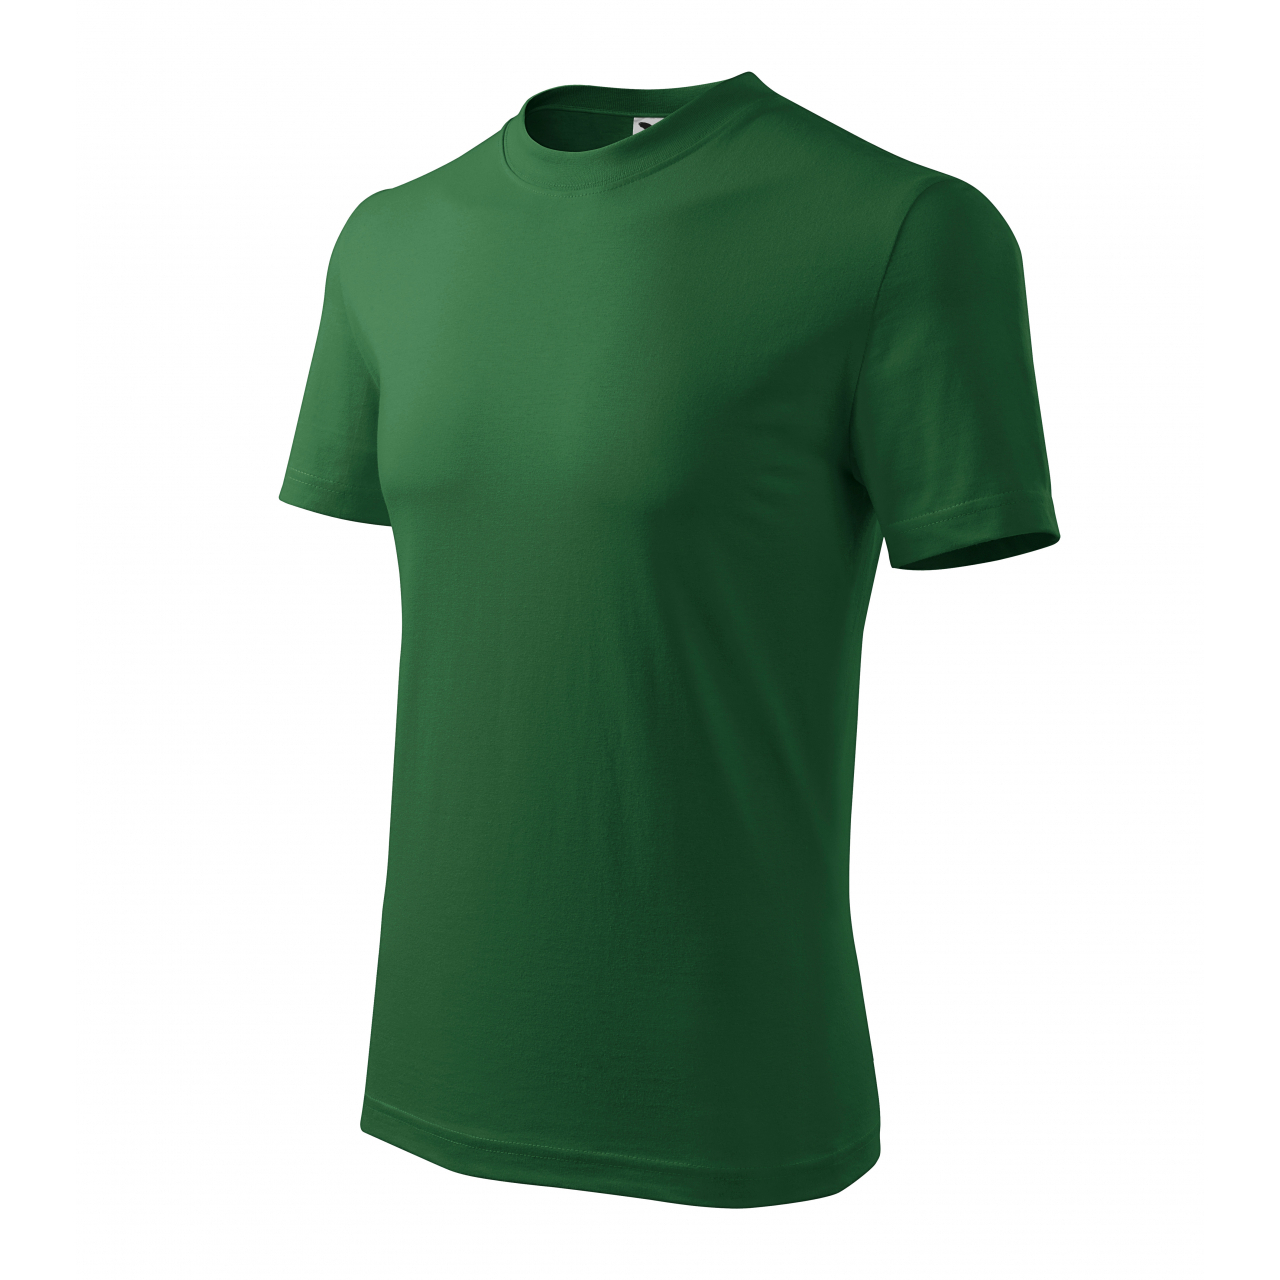 Tričko unisex Malfini Classic - tmavě zelené, L